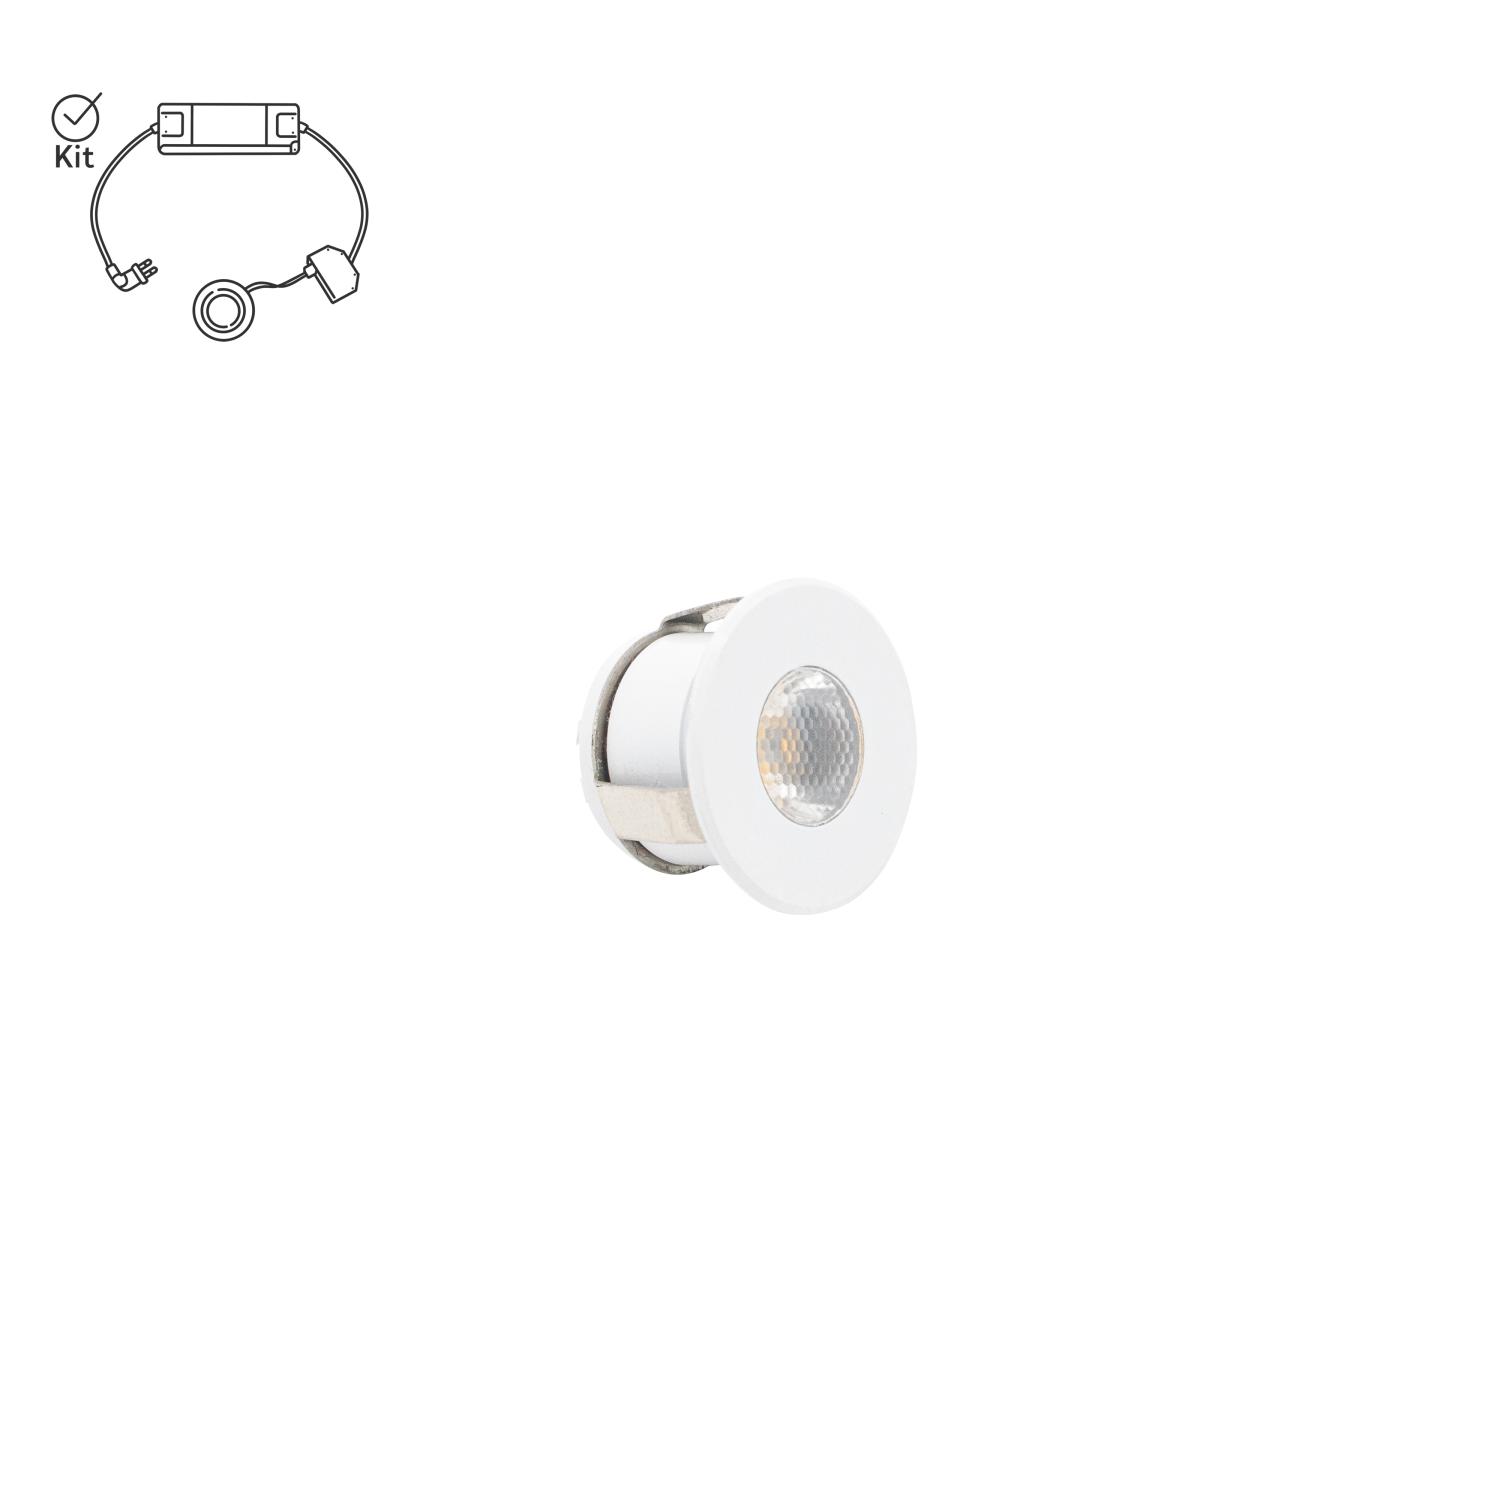 Mini LED spotlight i vitt med symbol som visar att produkten köps i komplett kit